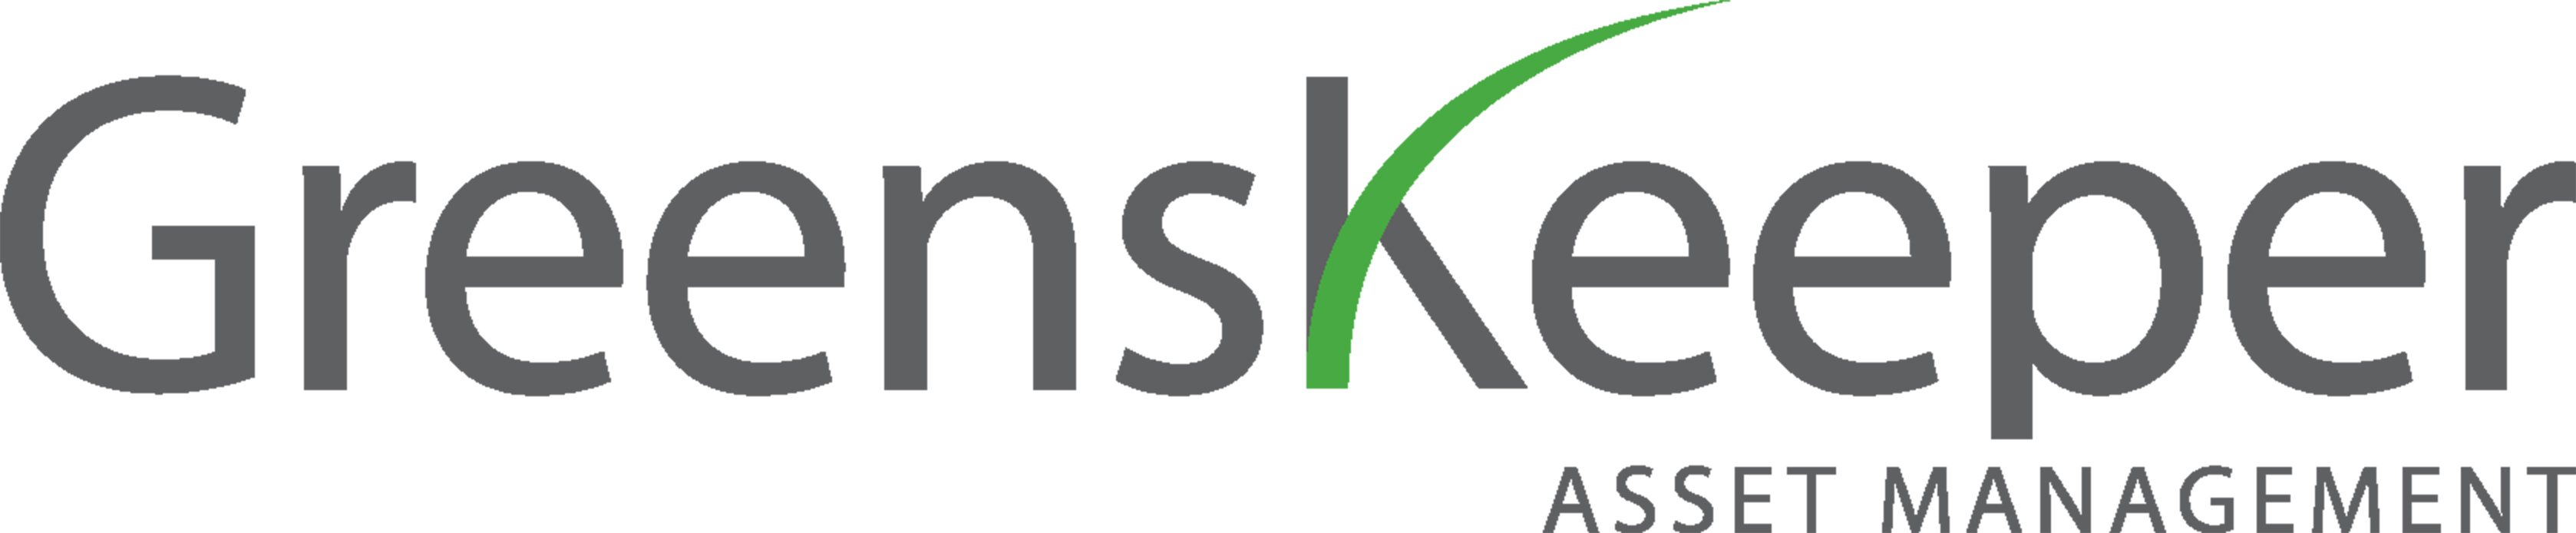 GreensKeeper Asset Management